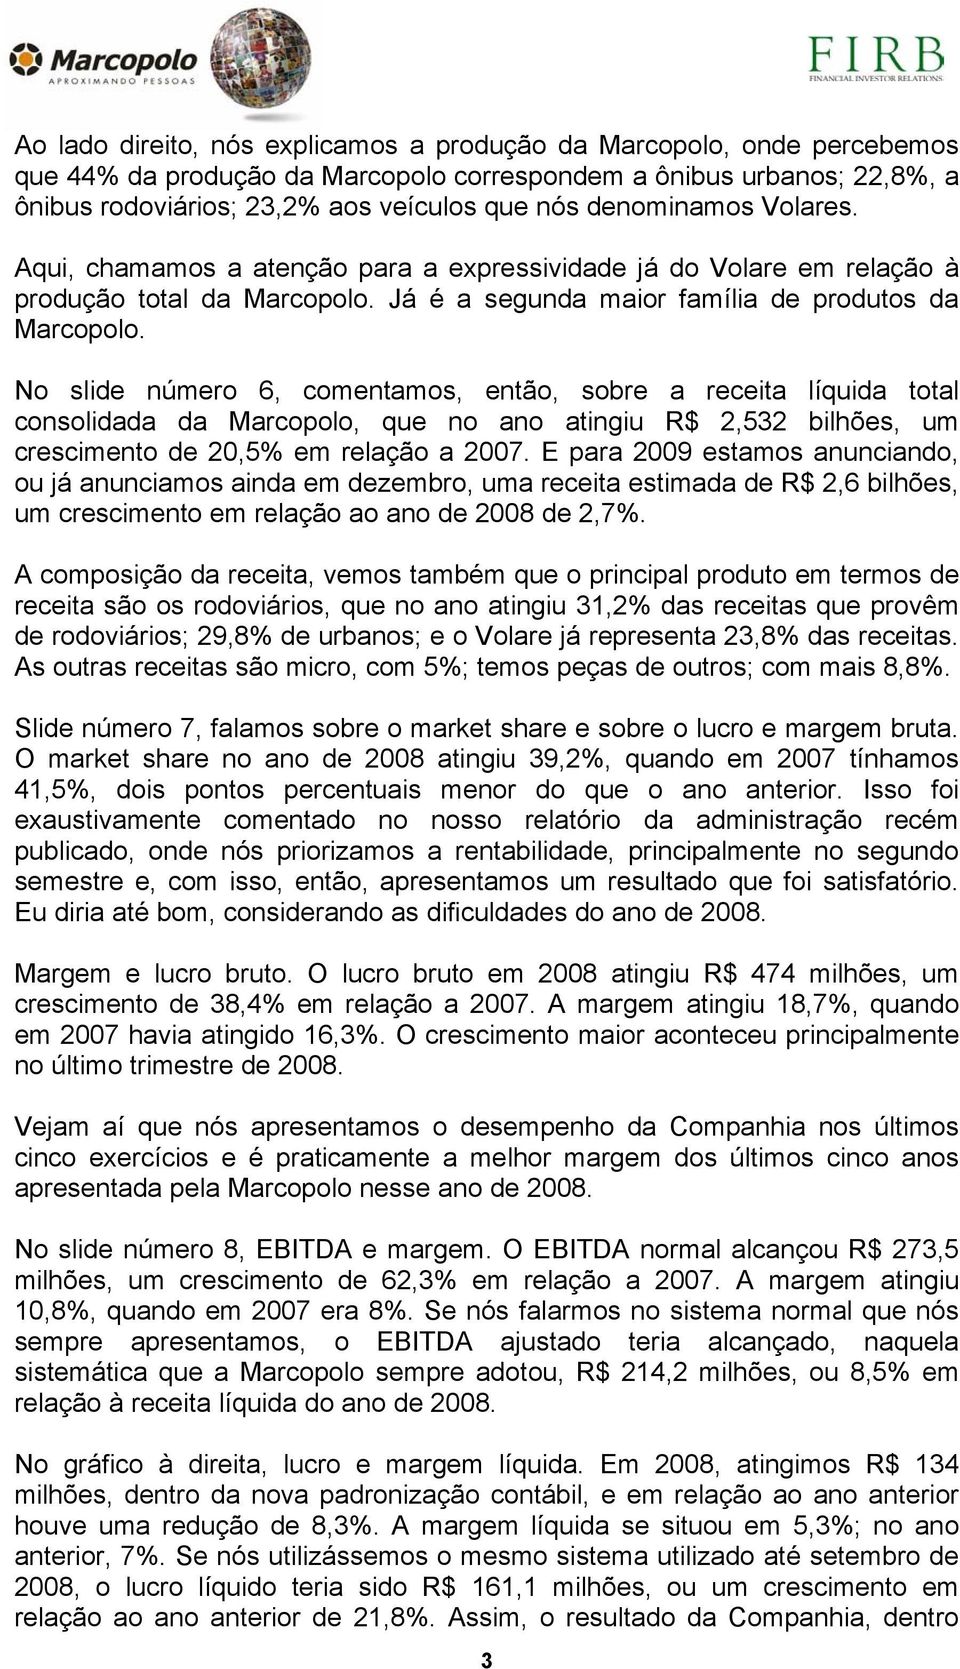 No slide número 6, comentamos, então, sobre a receita líquida total consolidada da Marcopolo, que no ano atingiu R$ 2,532 bilhões, um crescimento de 20,5% em relação a 2007.